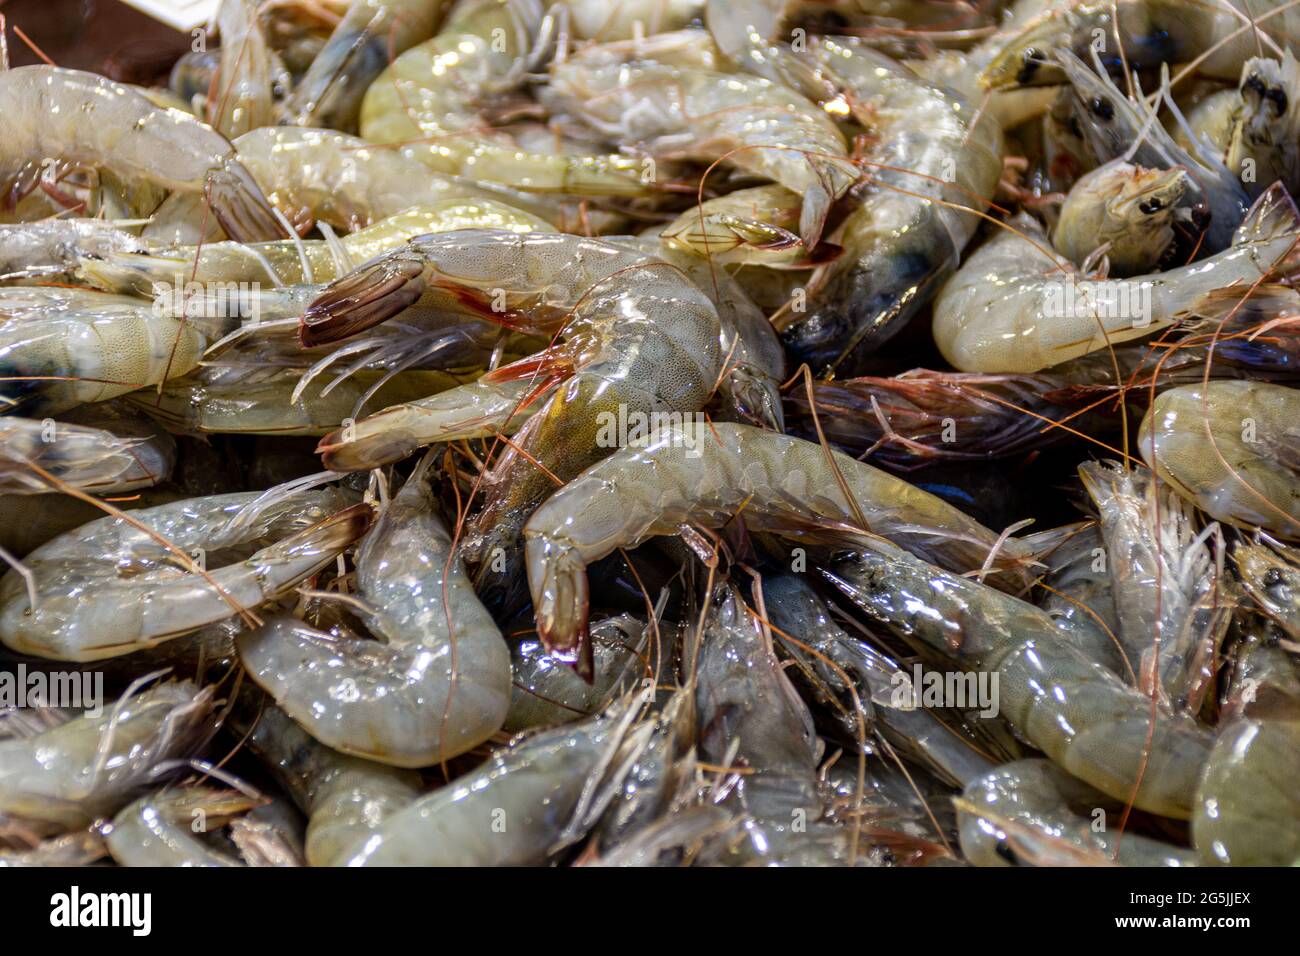 Fresh raw shrimps at the Rialto market in Venice, Italy Stock Photo